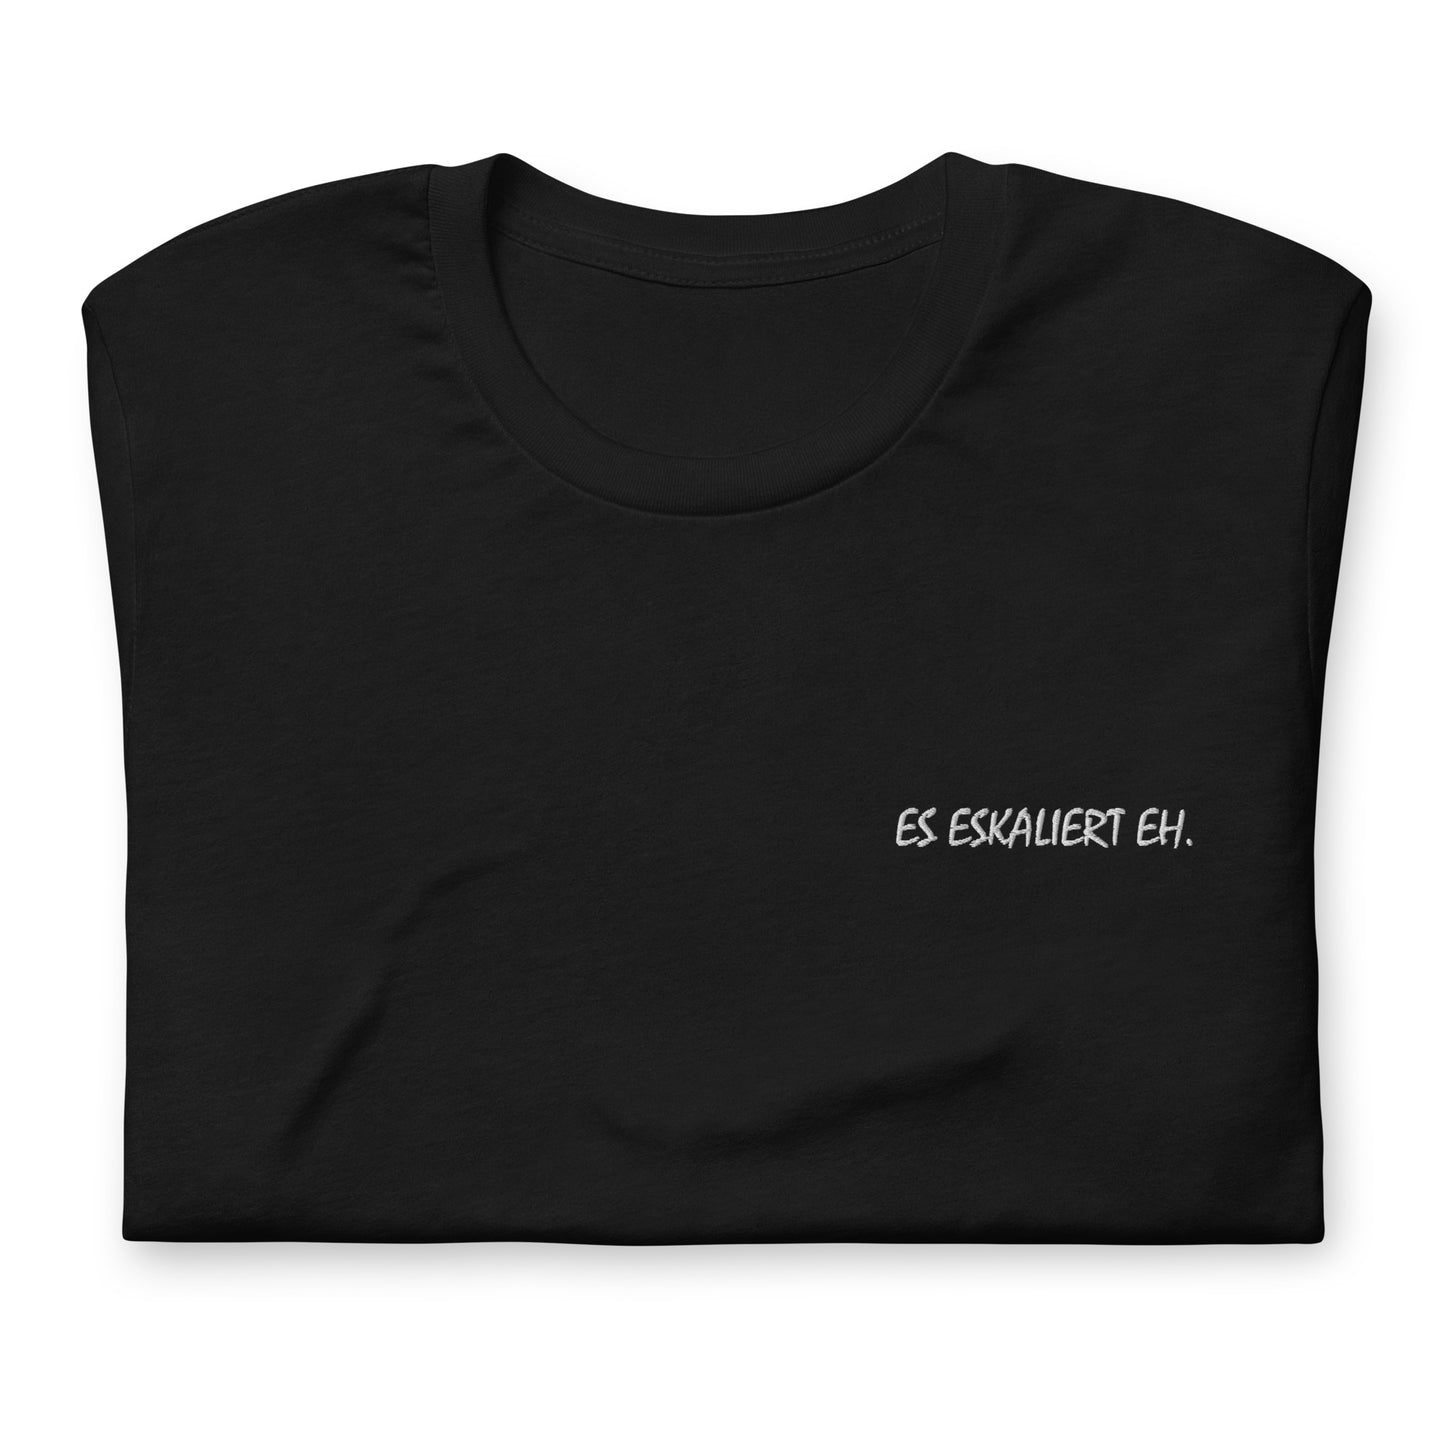 ES ESKALIERT EH. - besticktes T-Shirt